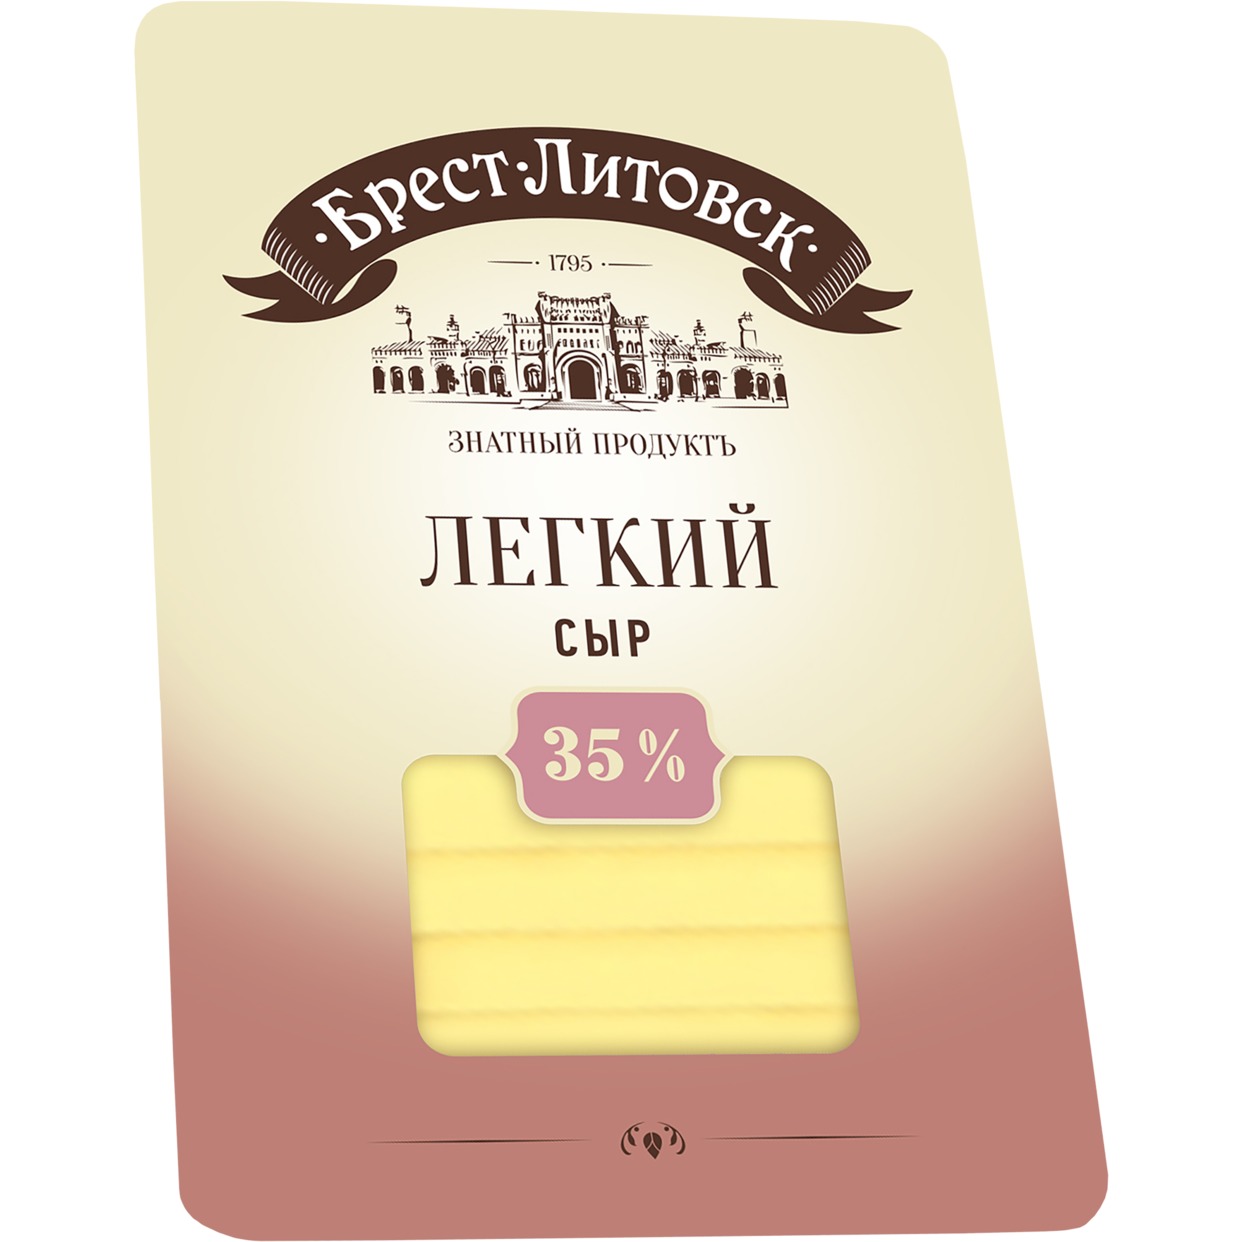 Сыр Брест-Литовский легкий 35% 150г по акции в Пятерочке